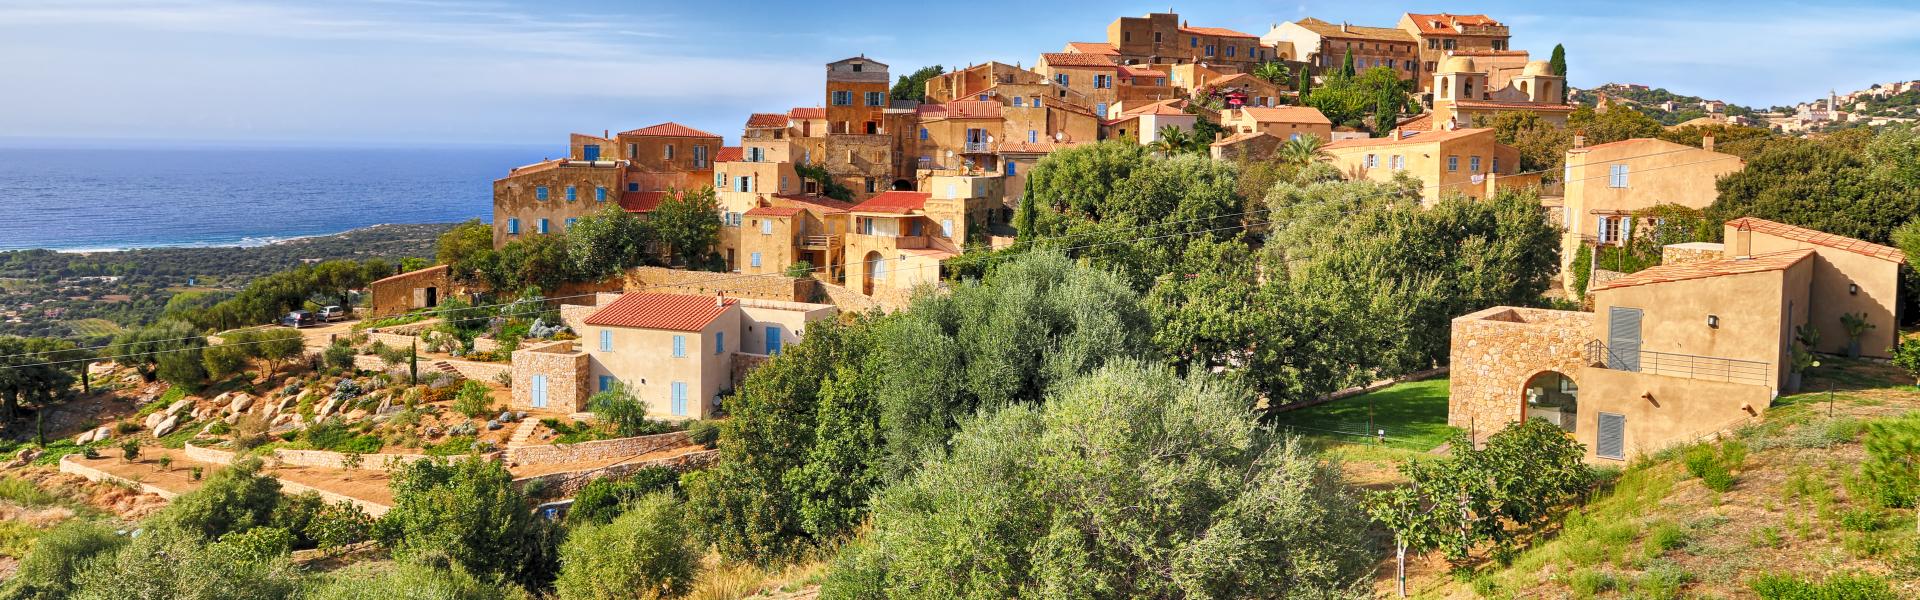 Korsika Natural View